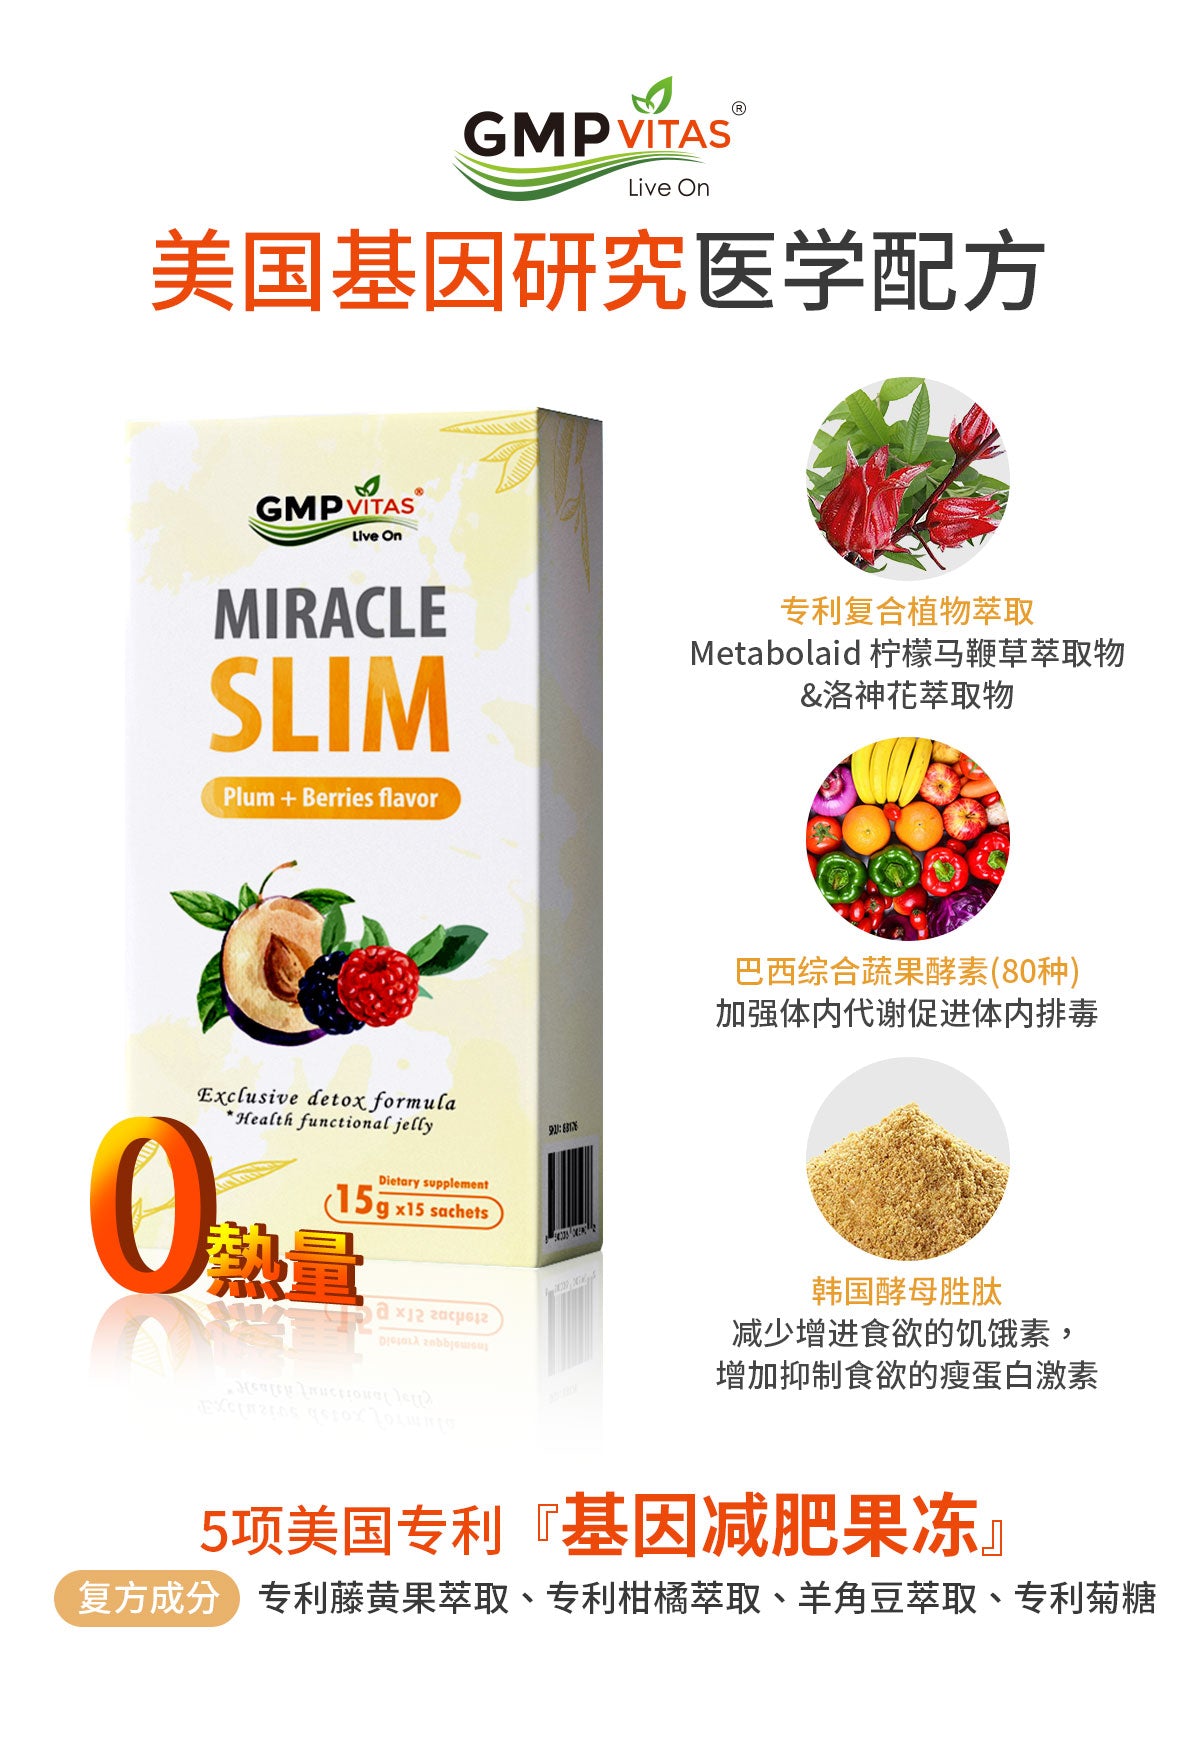 美國純植物天然排毒抑制食慾瘦身減肥果凍 健康美味 一天一包酸甜可口 GMP Vitas Miracle Slim 15g x 15包